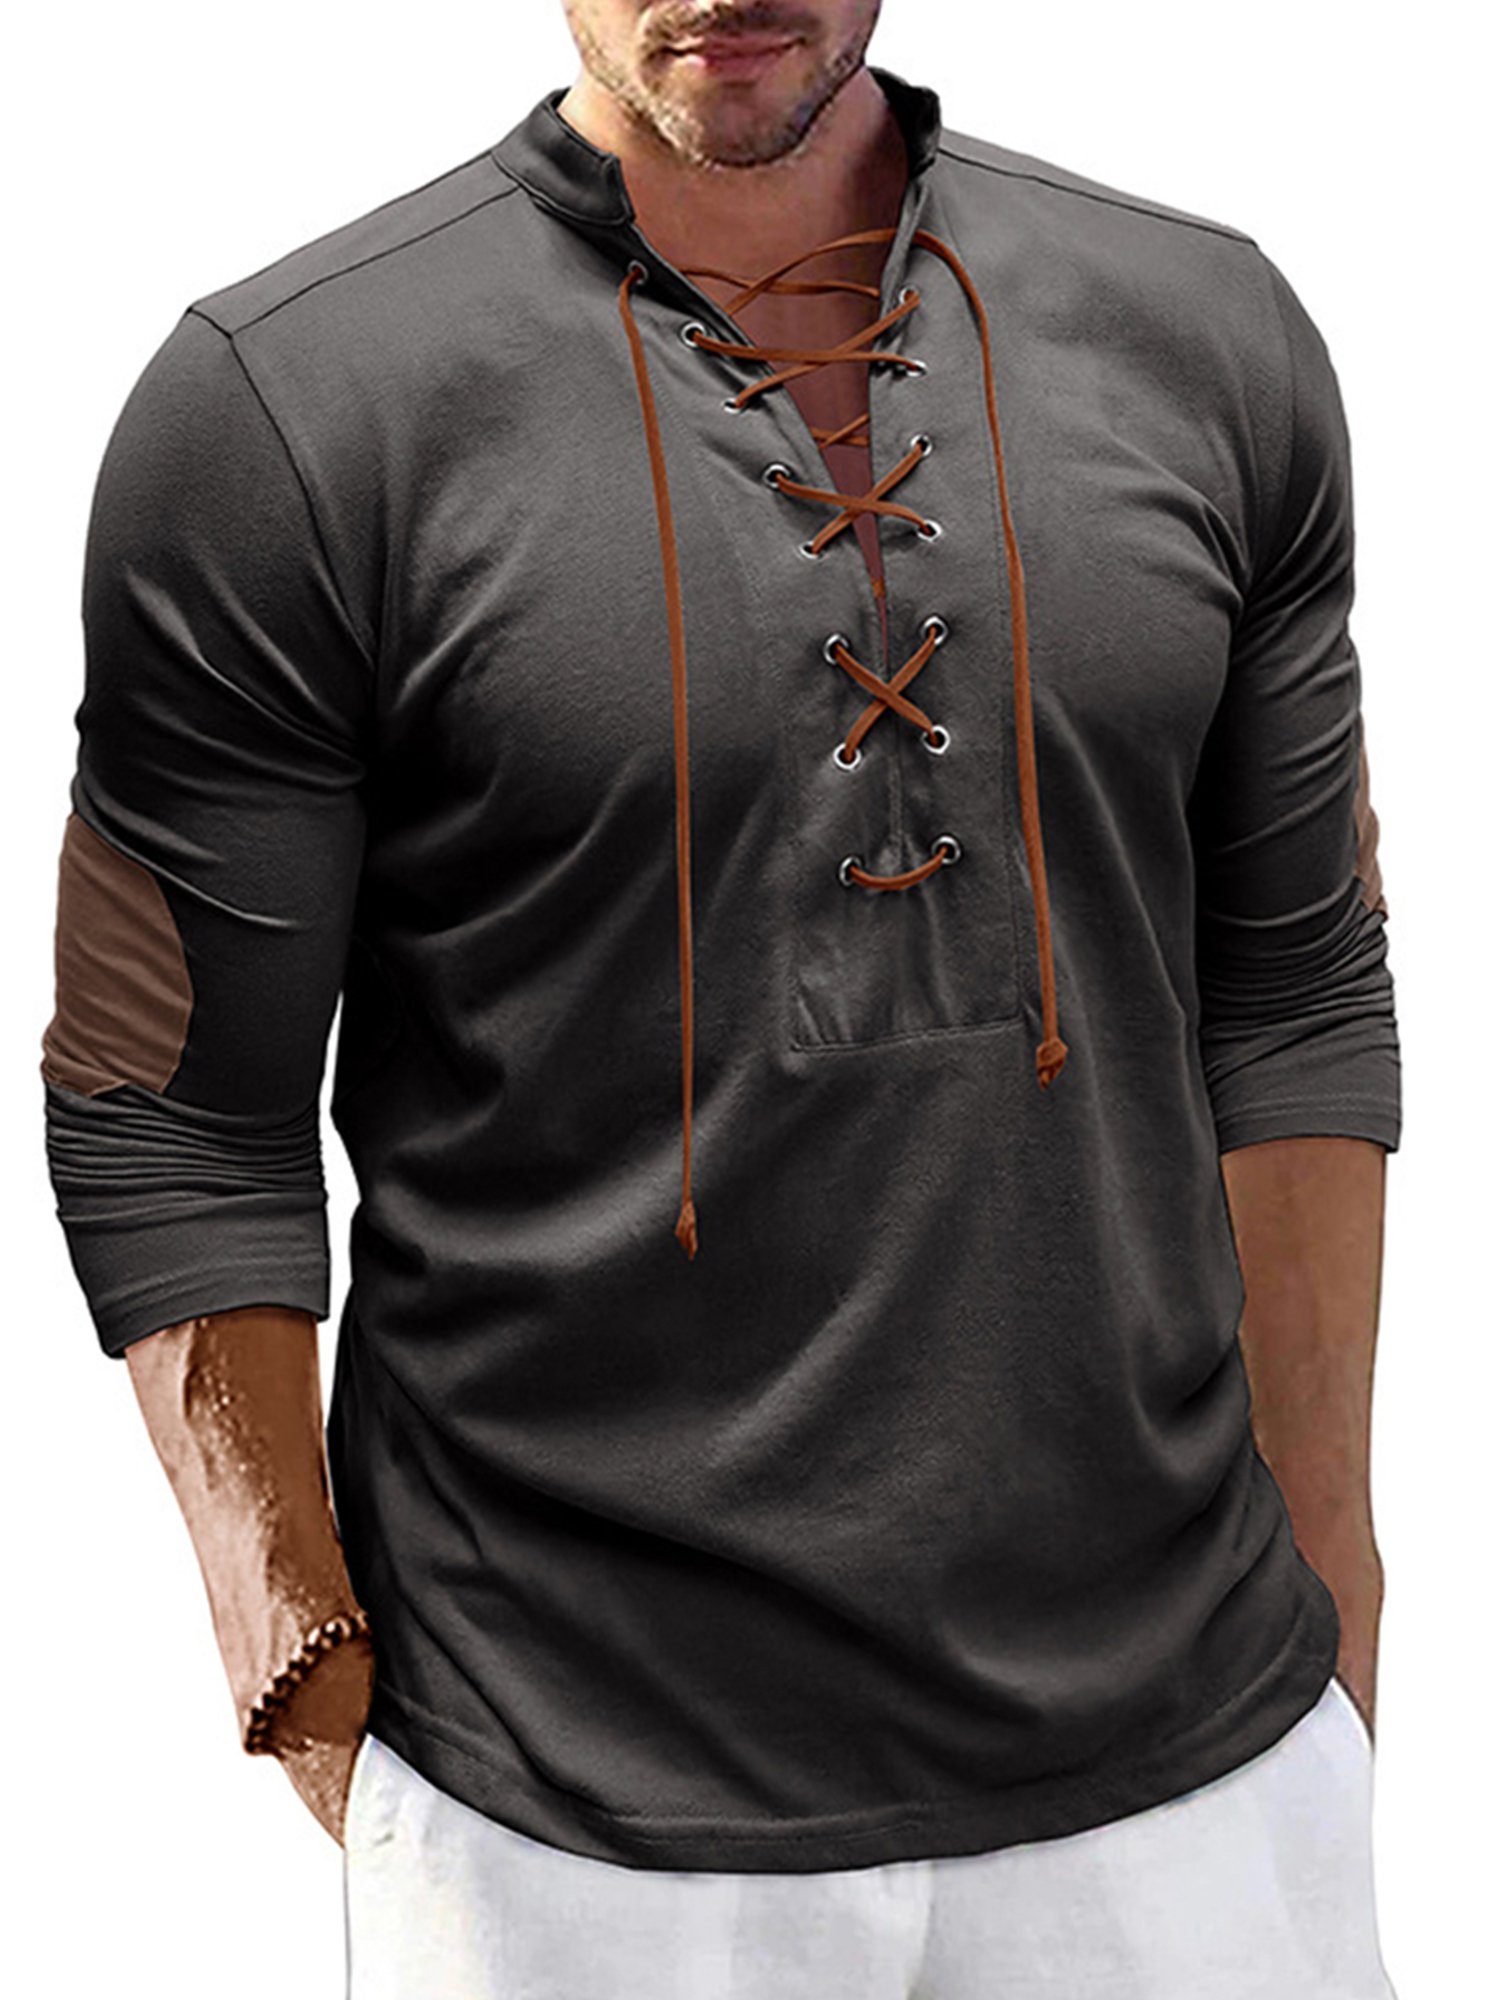 Lapastyle Langarmshirt Herren V-Ausschnitt Henleyshirt mit Stehkragen Lässiges T-shirt einfarbig Top, Bindedesign am Brustausschnitt Anthrazit Grau